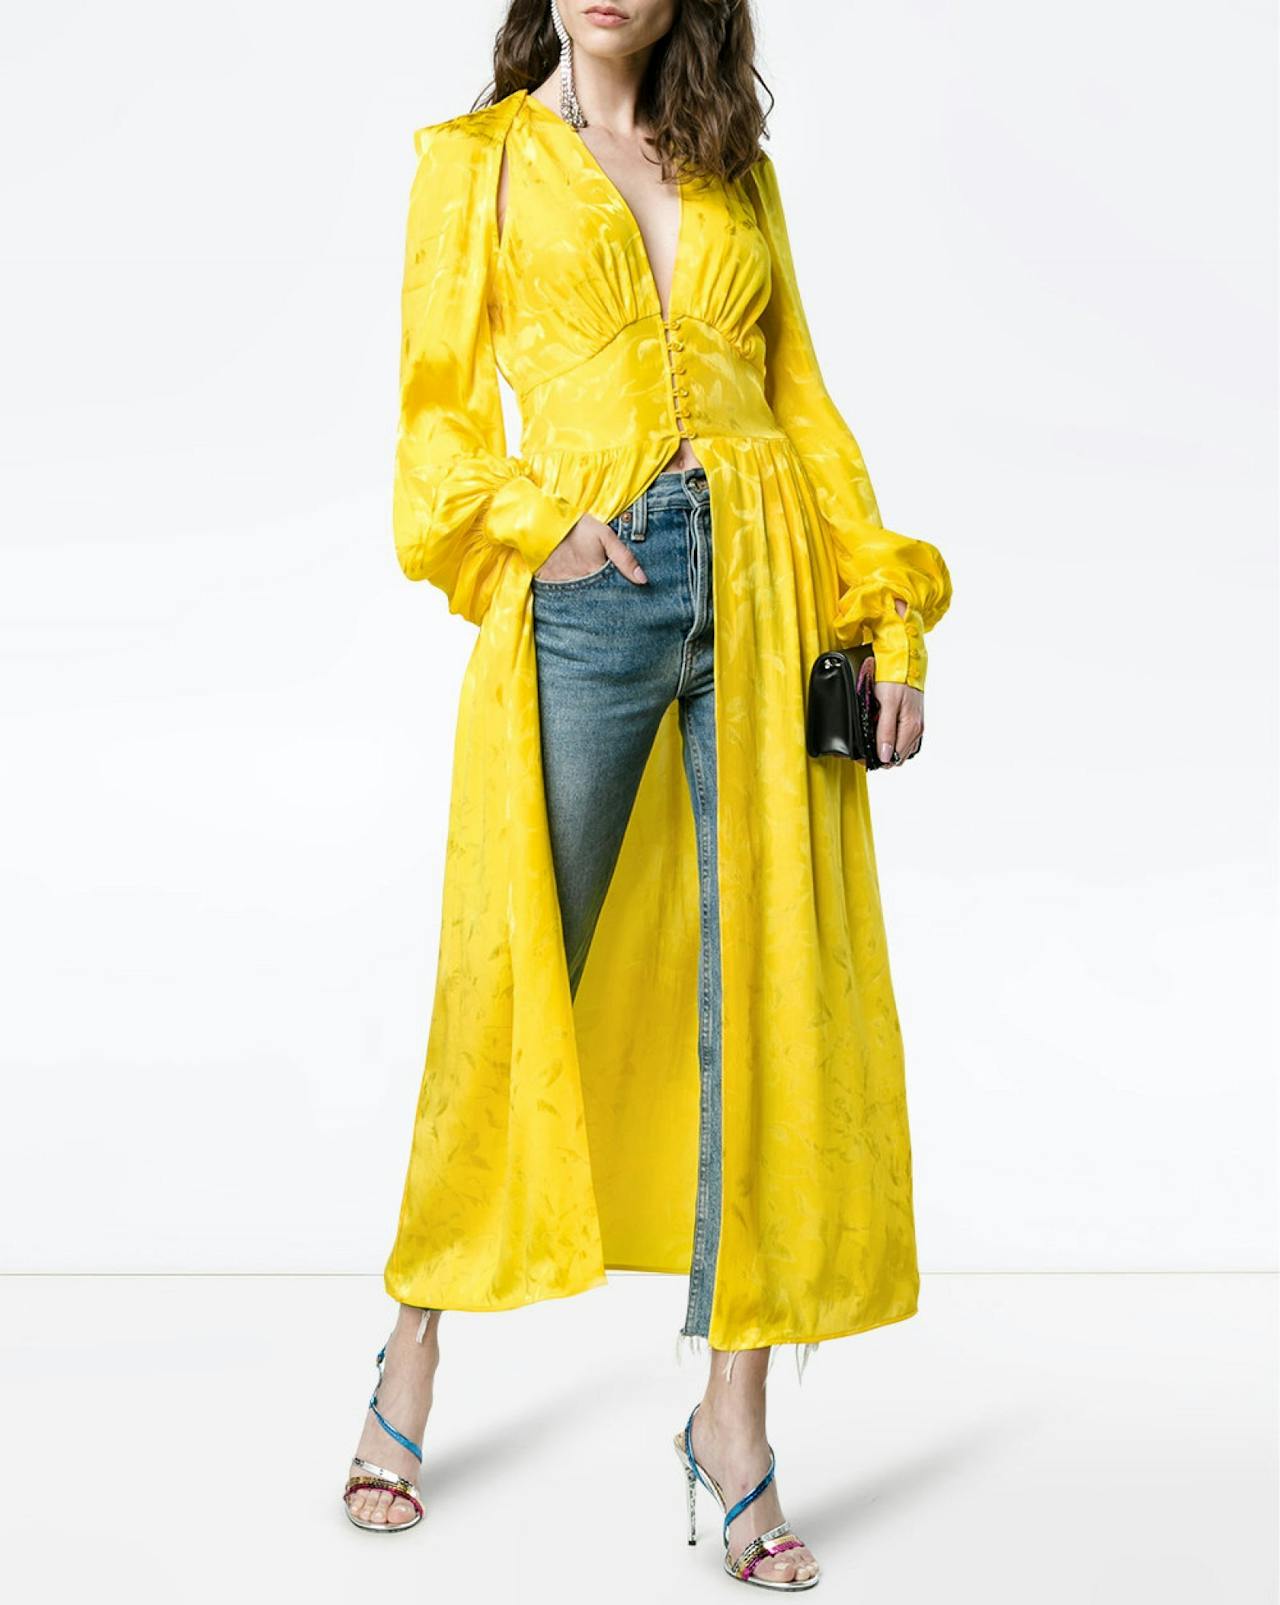 Vestido largo en amarillo de Attico cuyo precio es de 1.550 euros.